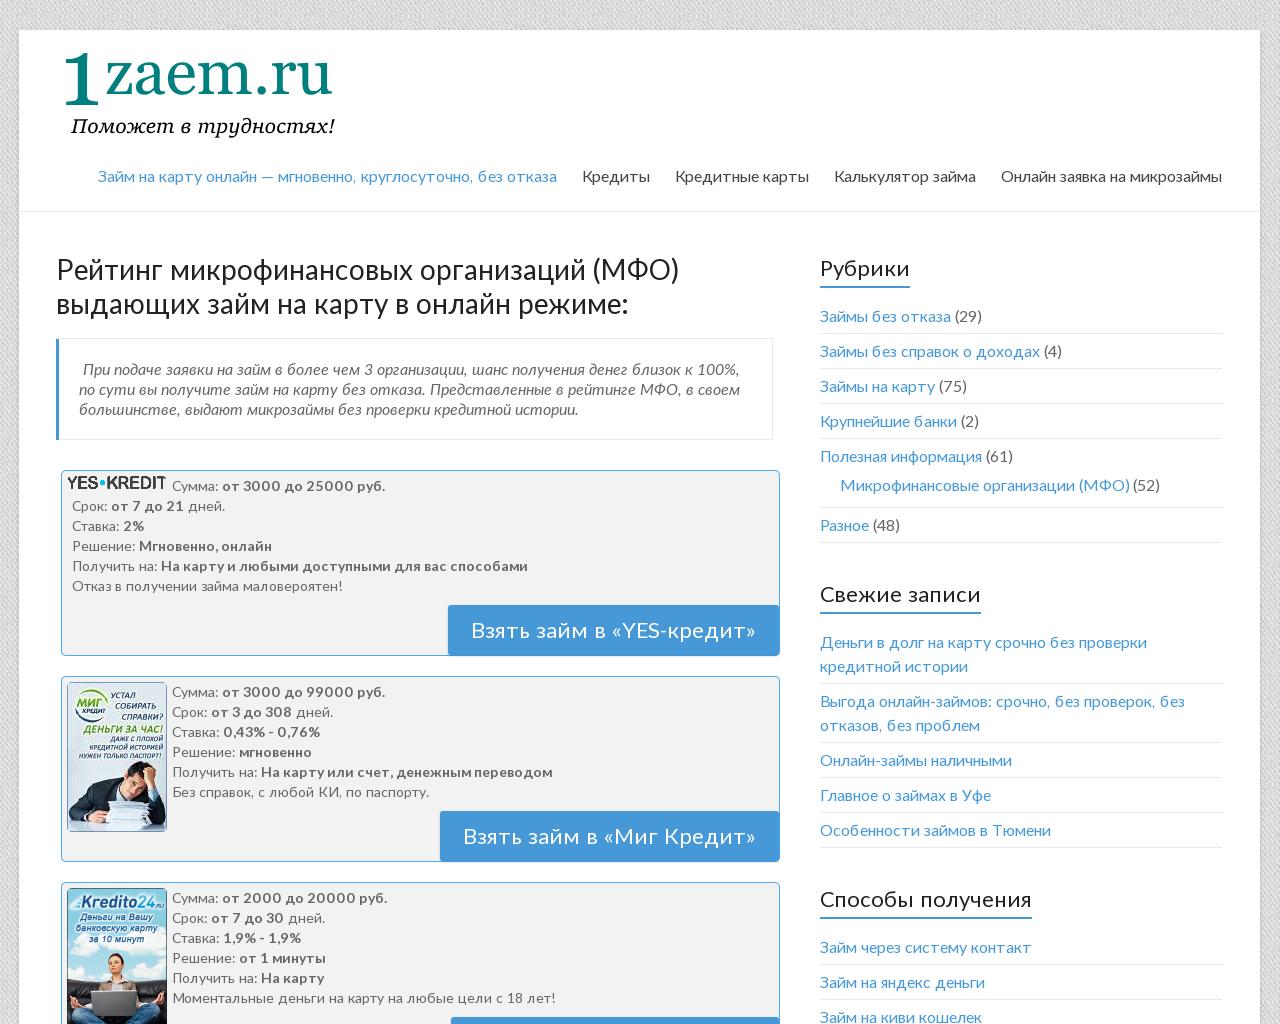 Изображение сайта 1zaem.ru в разрешении 1280x1024